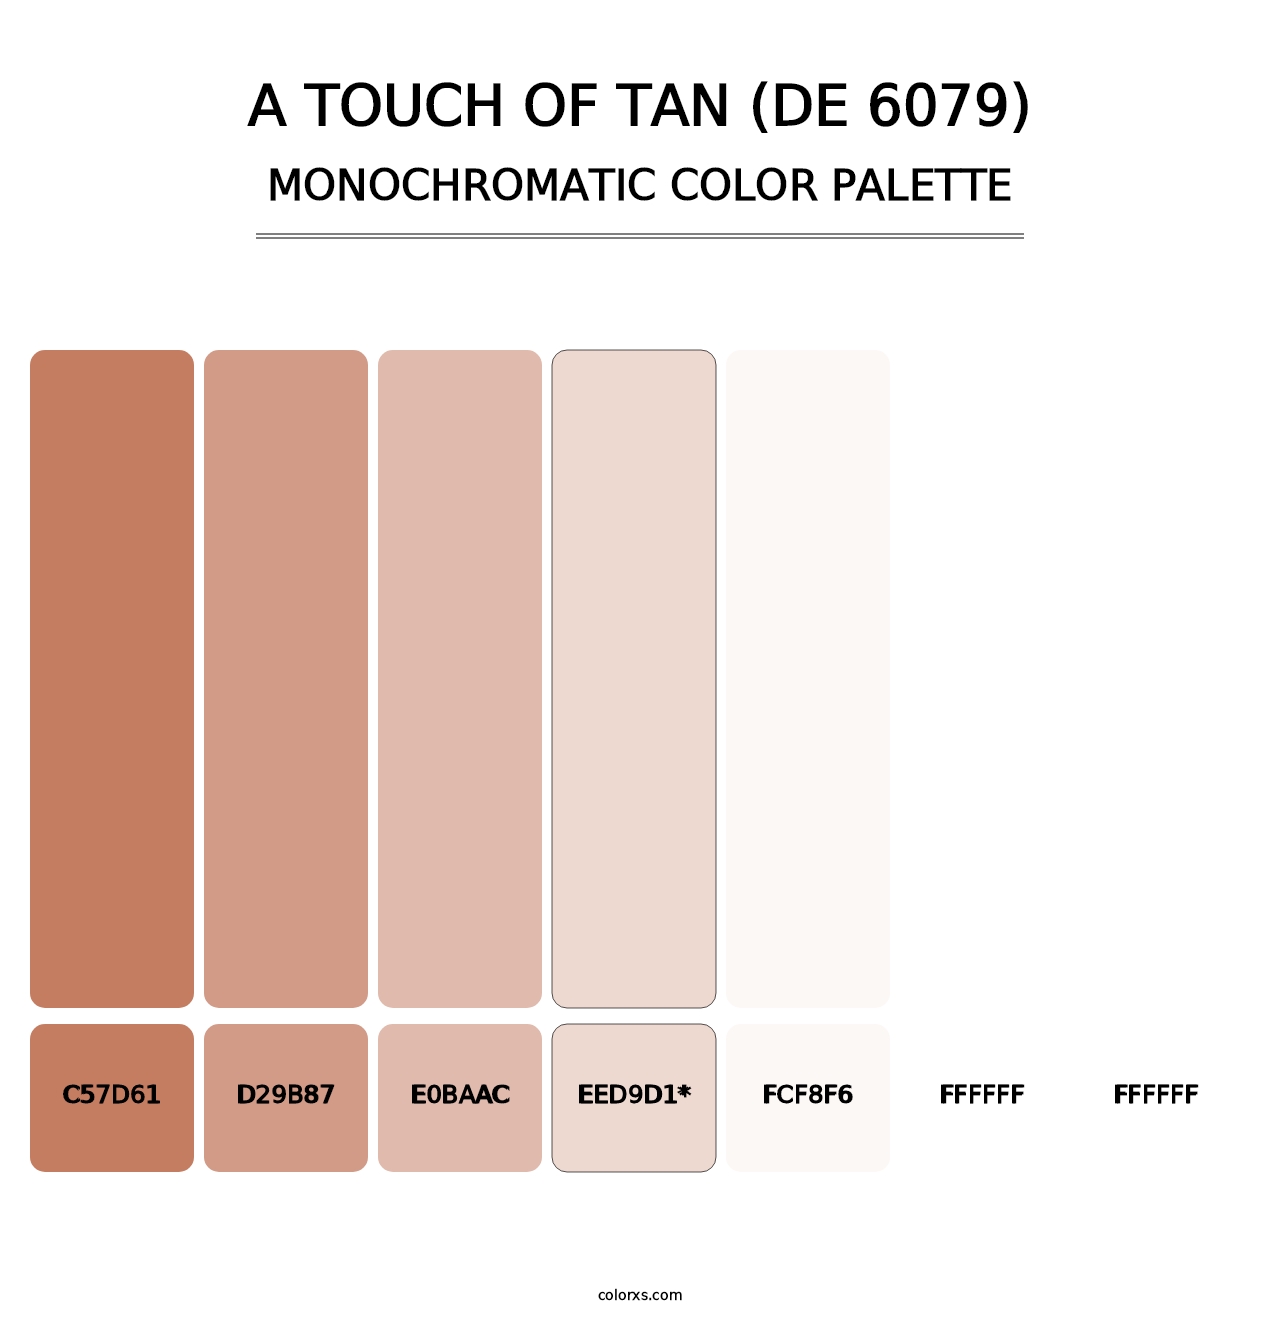 A Touch of Tan (DE 6079) - Monochromatic Color Palette